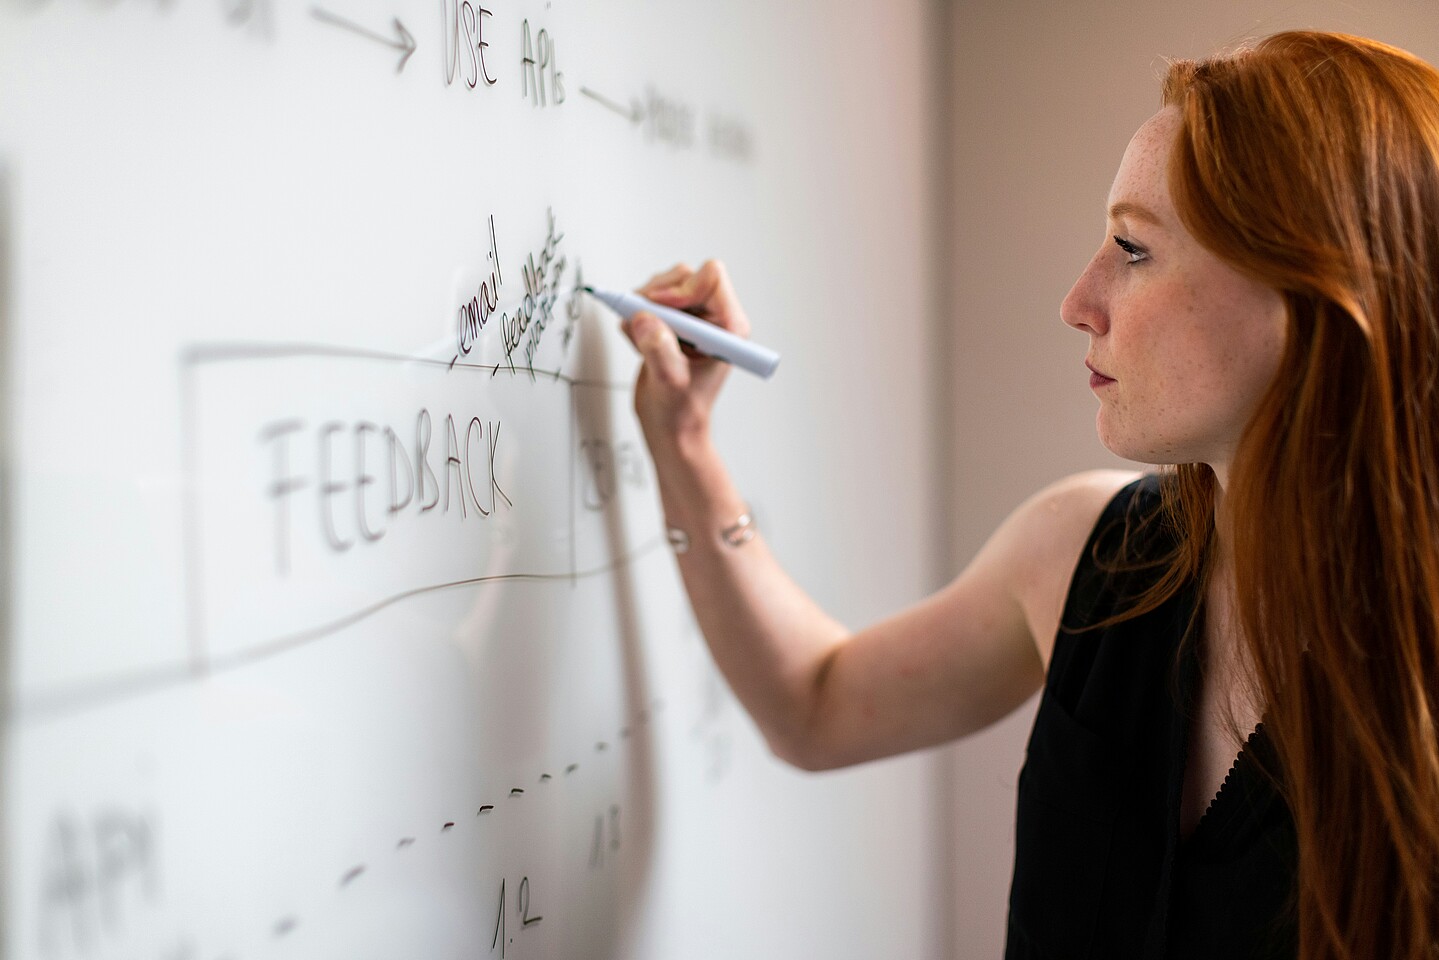 Eine Frau schreibt an einem Whiteboard, an dem verschiedene Begriffe, darunter auch Feedback, stehen